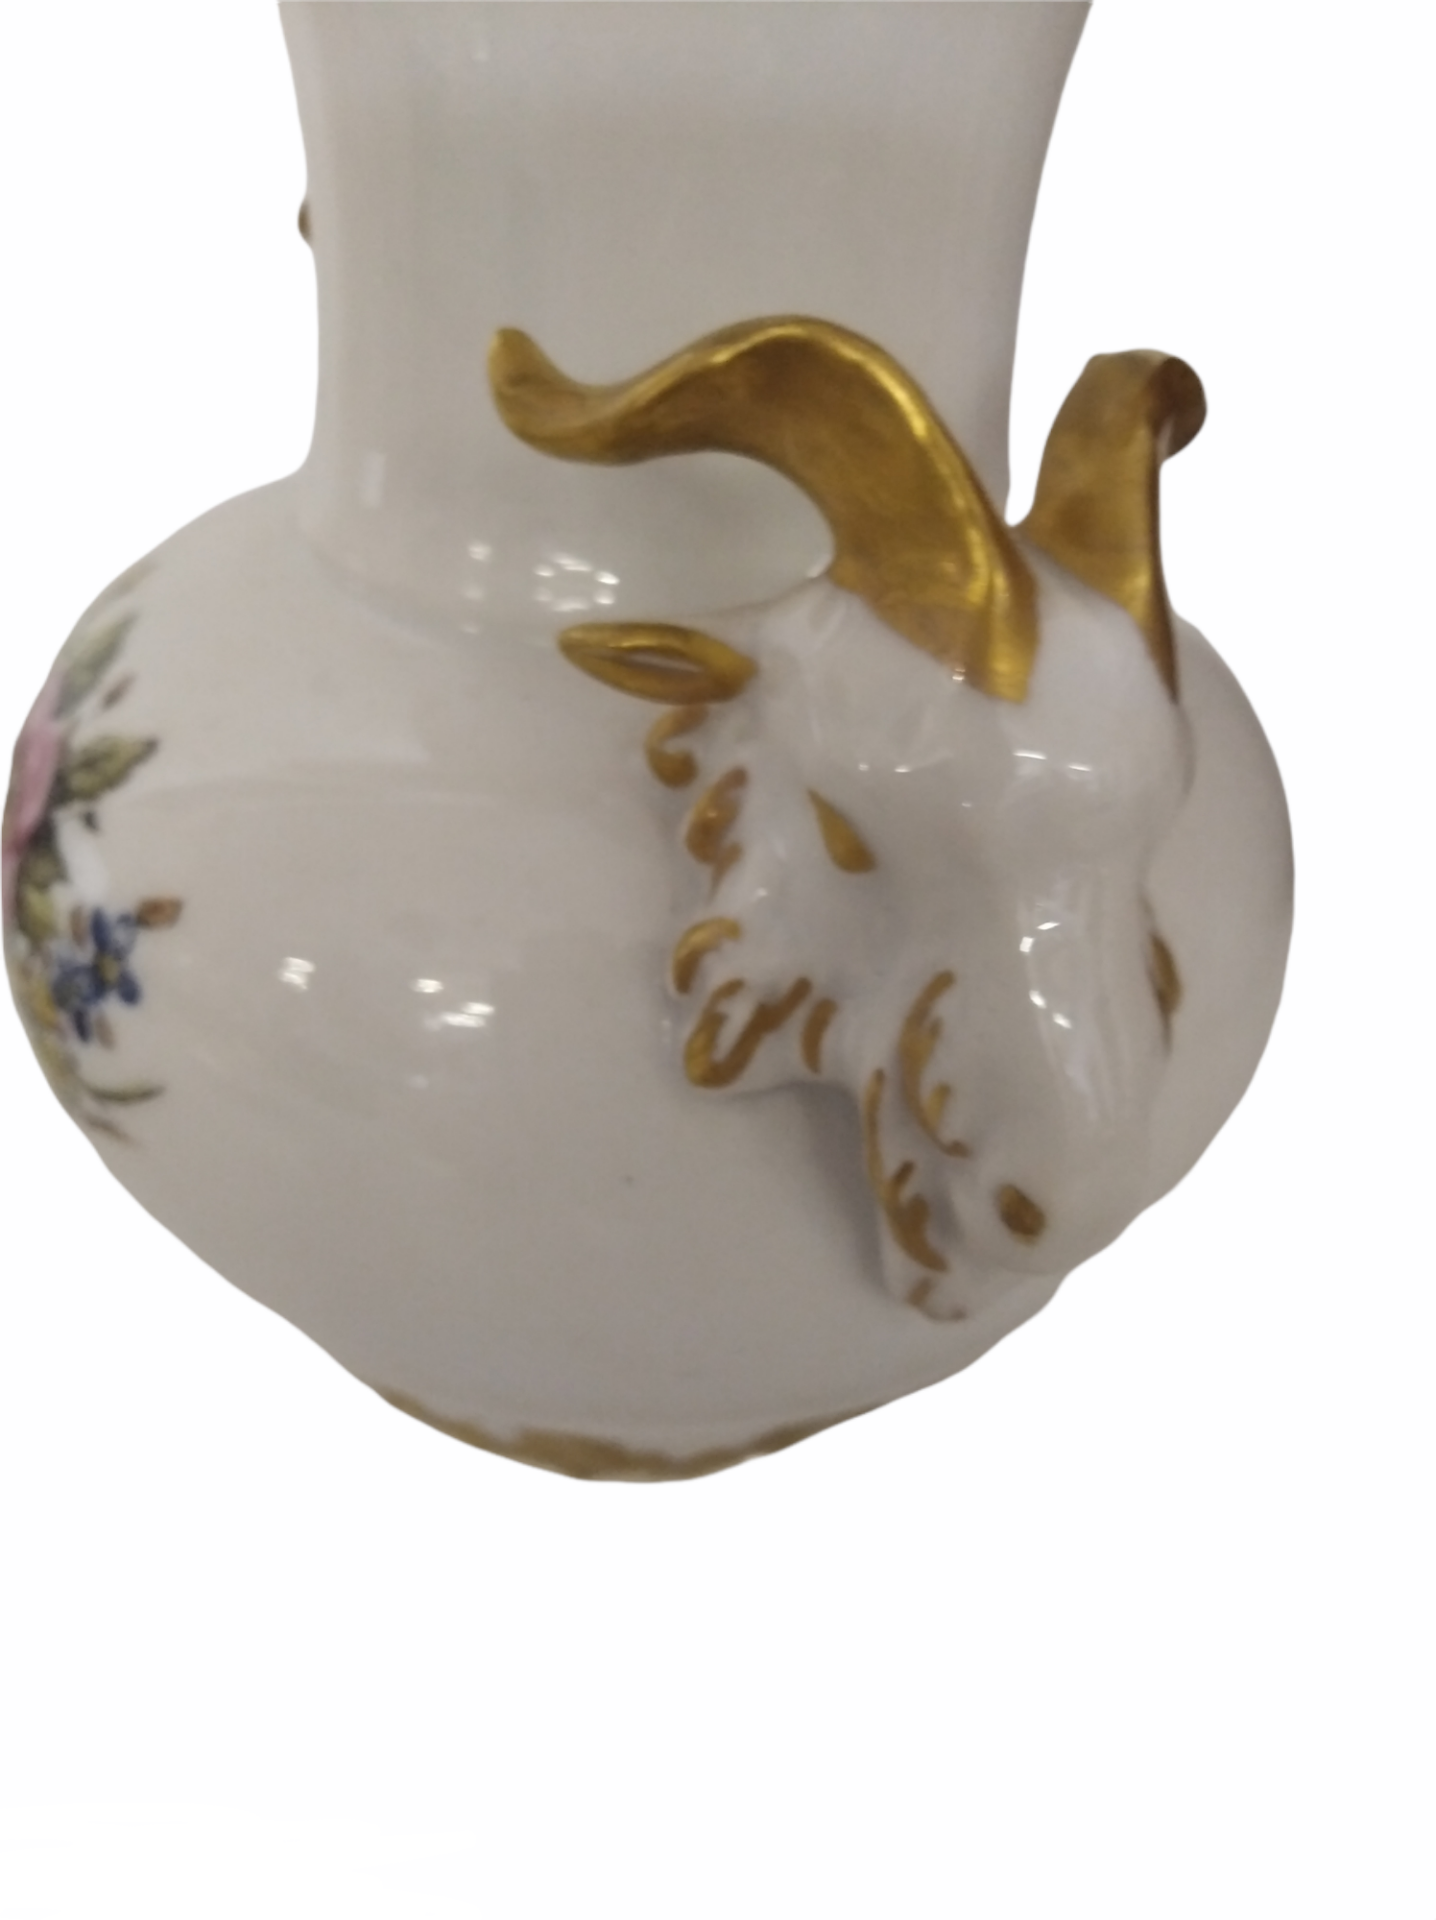 KPM Vase - Image 2 of 4